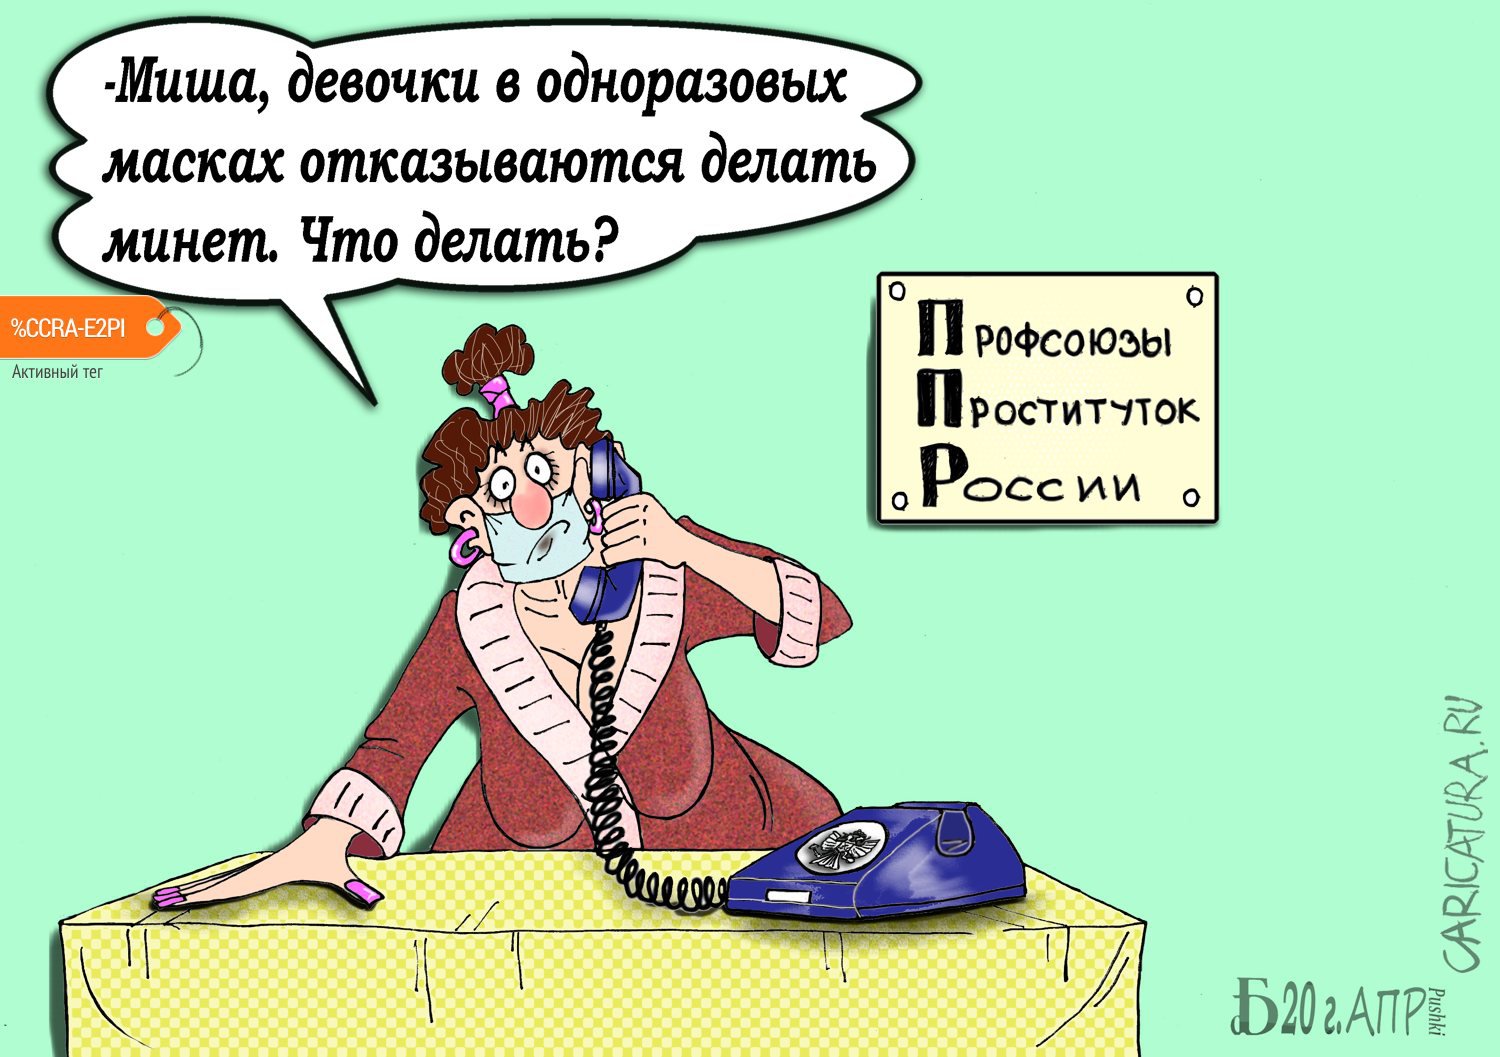 Карикатура "Про ППР", Борис Демин